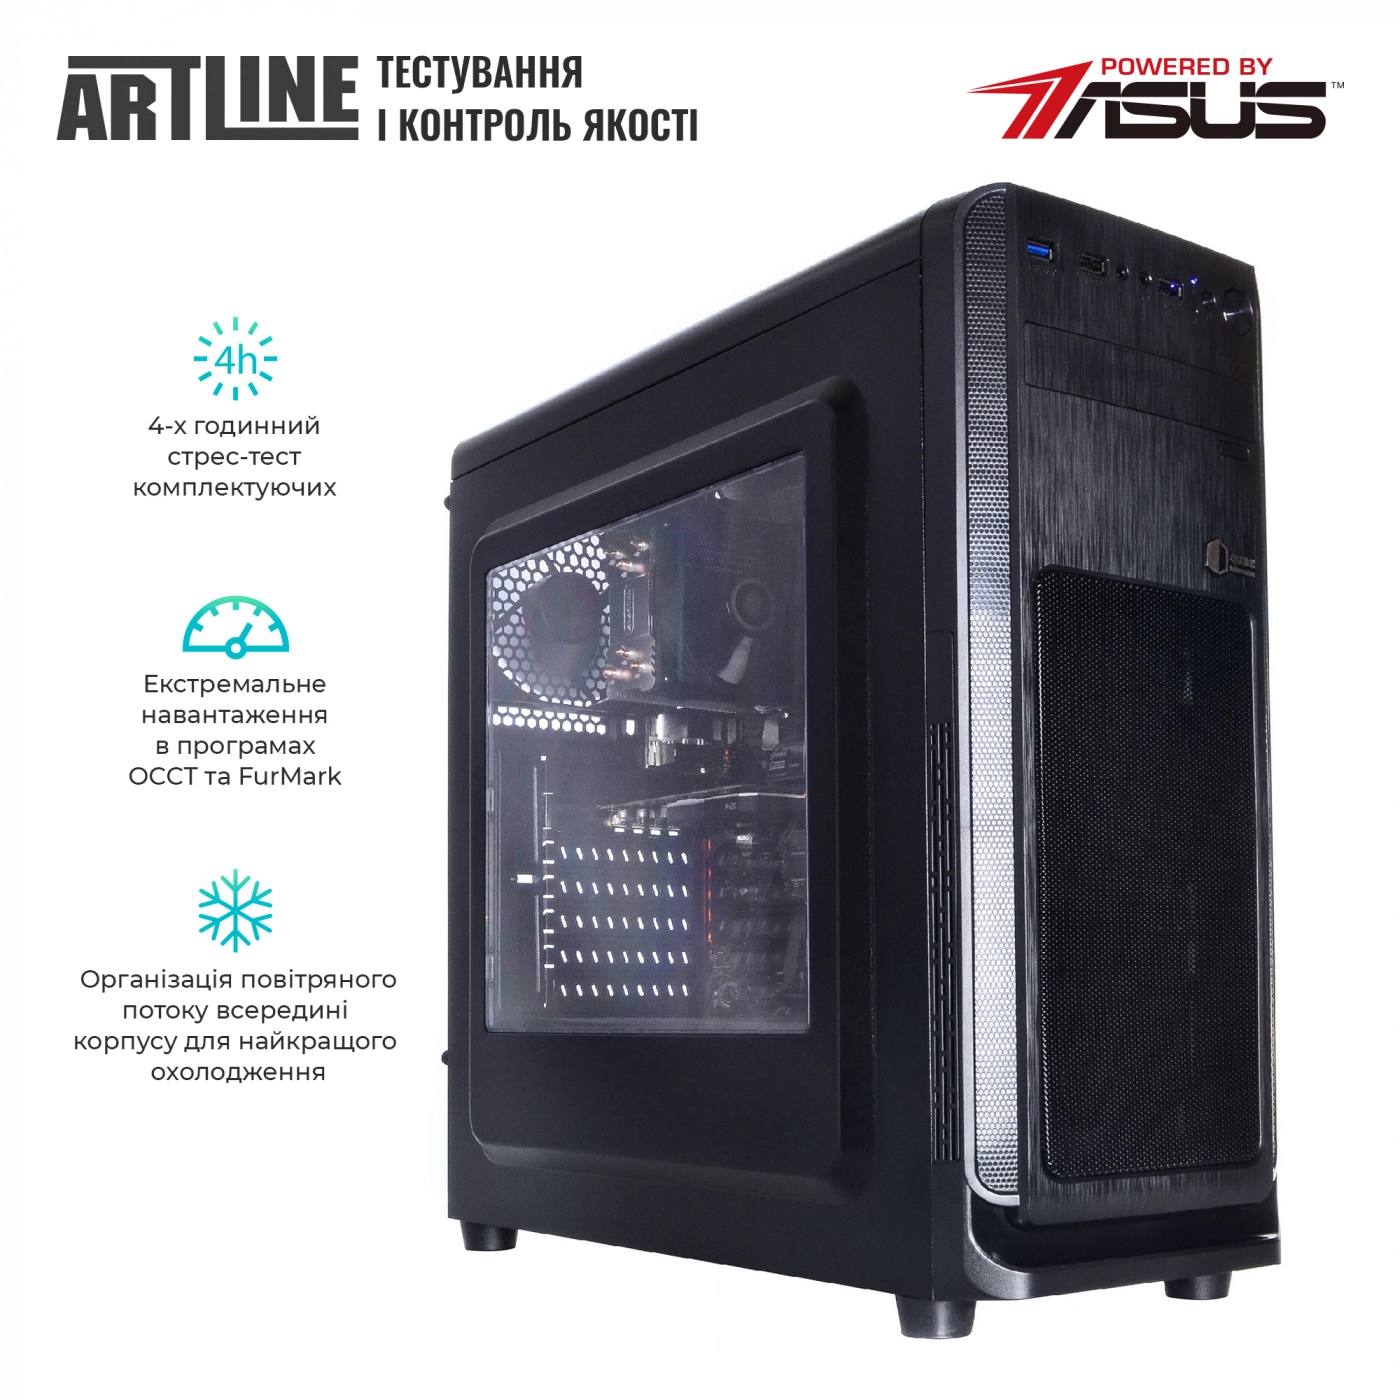 Купить Сервер ARTLINE Business T15v16 - фото 6